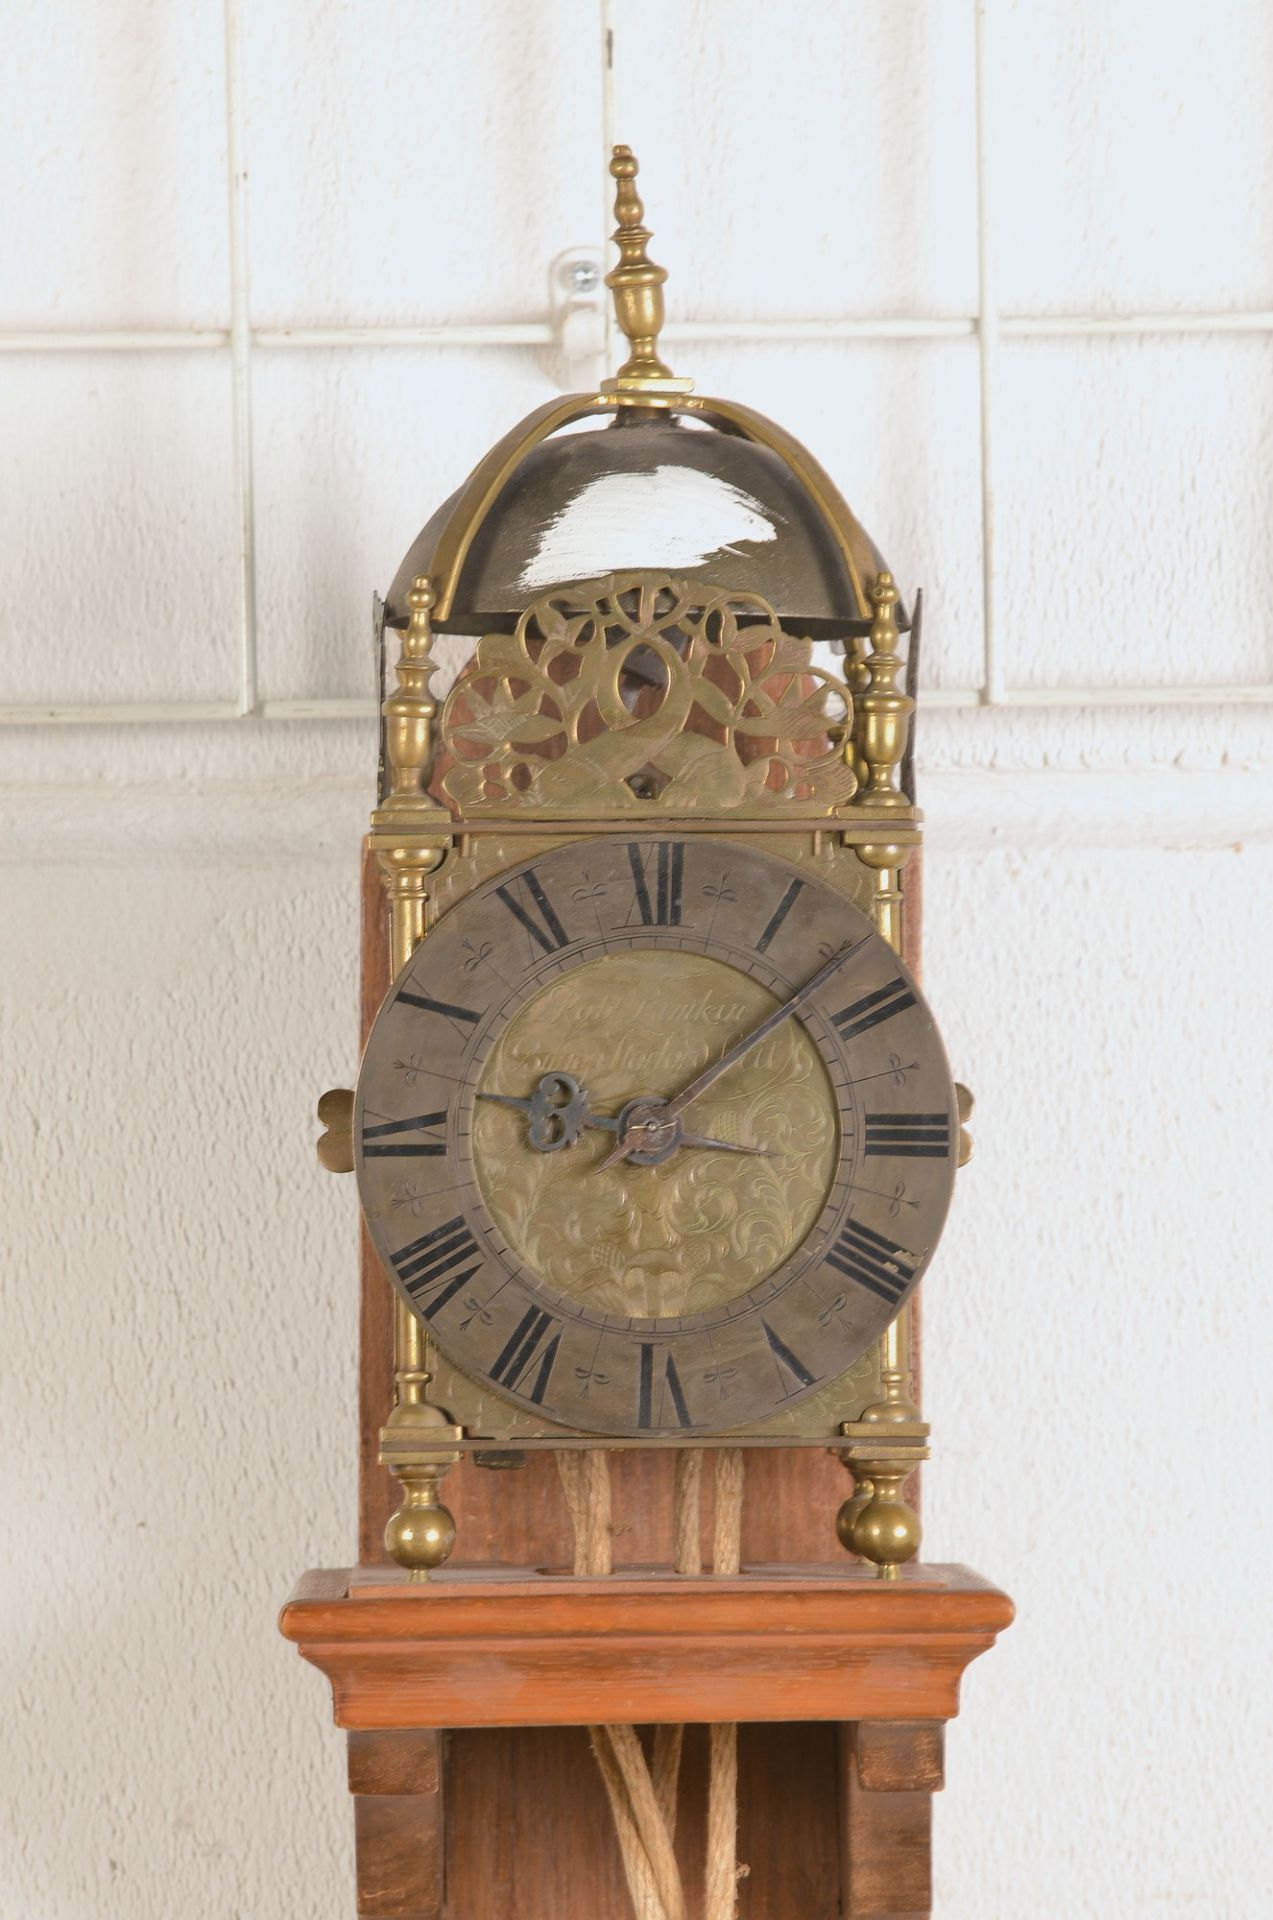 Lantern clock, after 1900, on wooden wall holder, brass housing, dial marked: Robt. Lunkin, Bishog